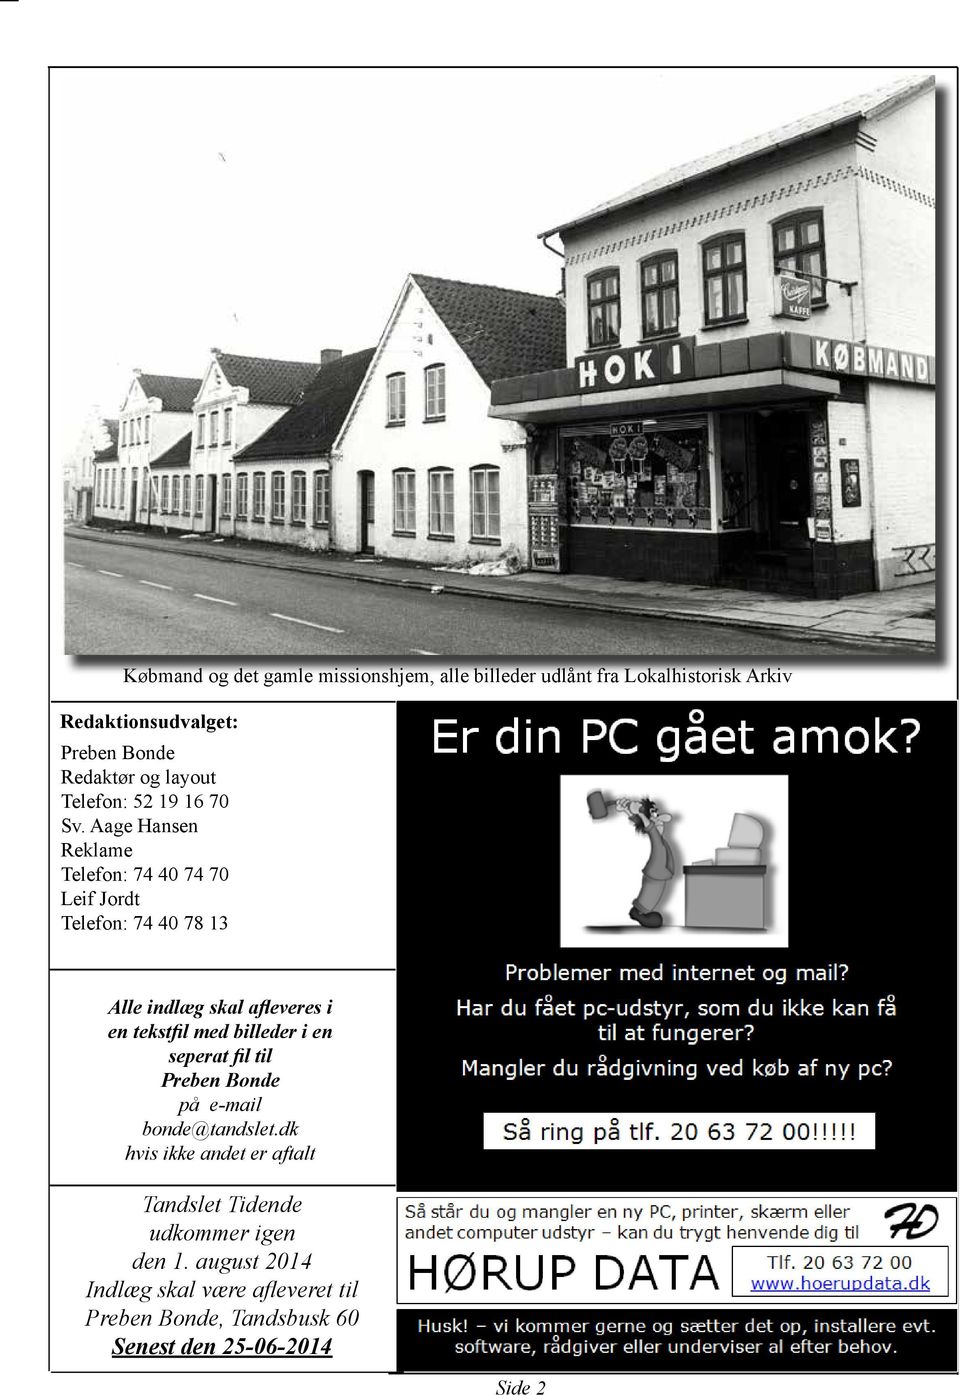 Aage Hansen Reklame Telefon: 74 40 74 70 Leif Jordt Telefon: 74 40 78 13 Alle indlæg skal afleveres i en tekstfil med billeder i en